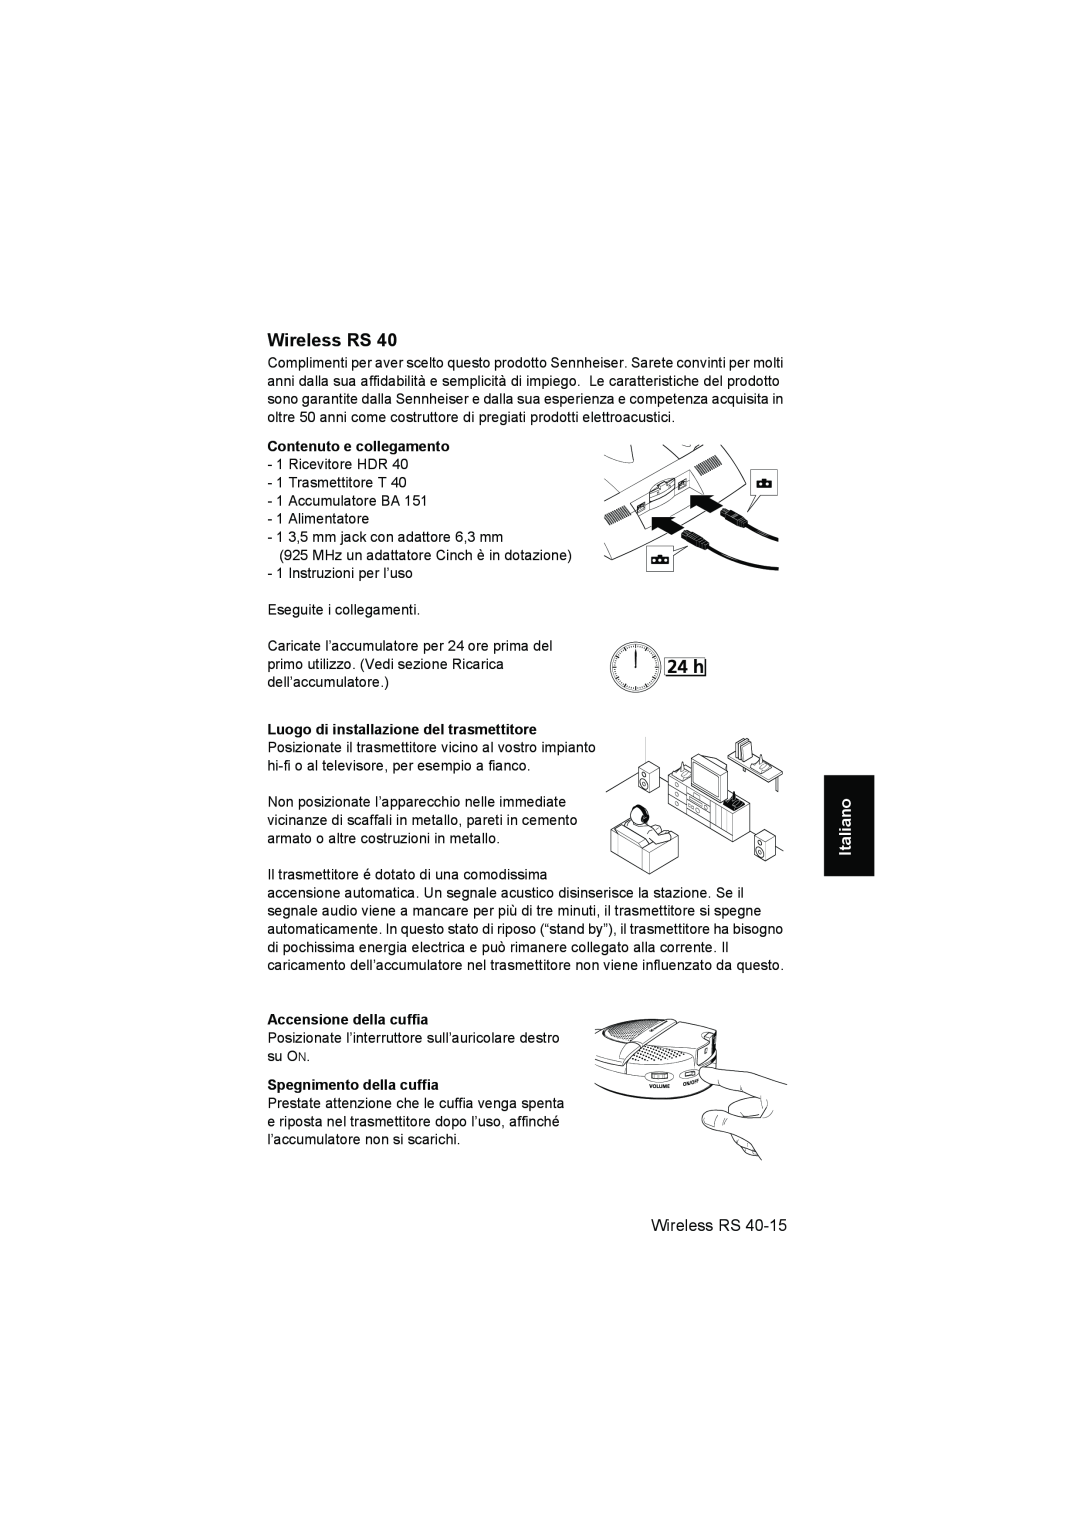 Sennheiser RS 40 instruction manual Italiano, Accensione della cuffia, Spegnimento della cuffia, Wireless RS 